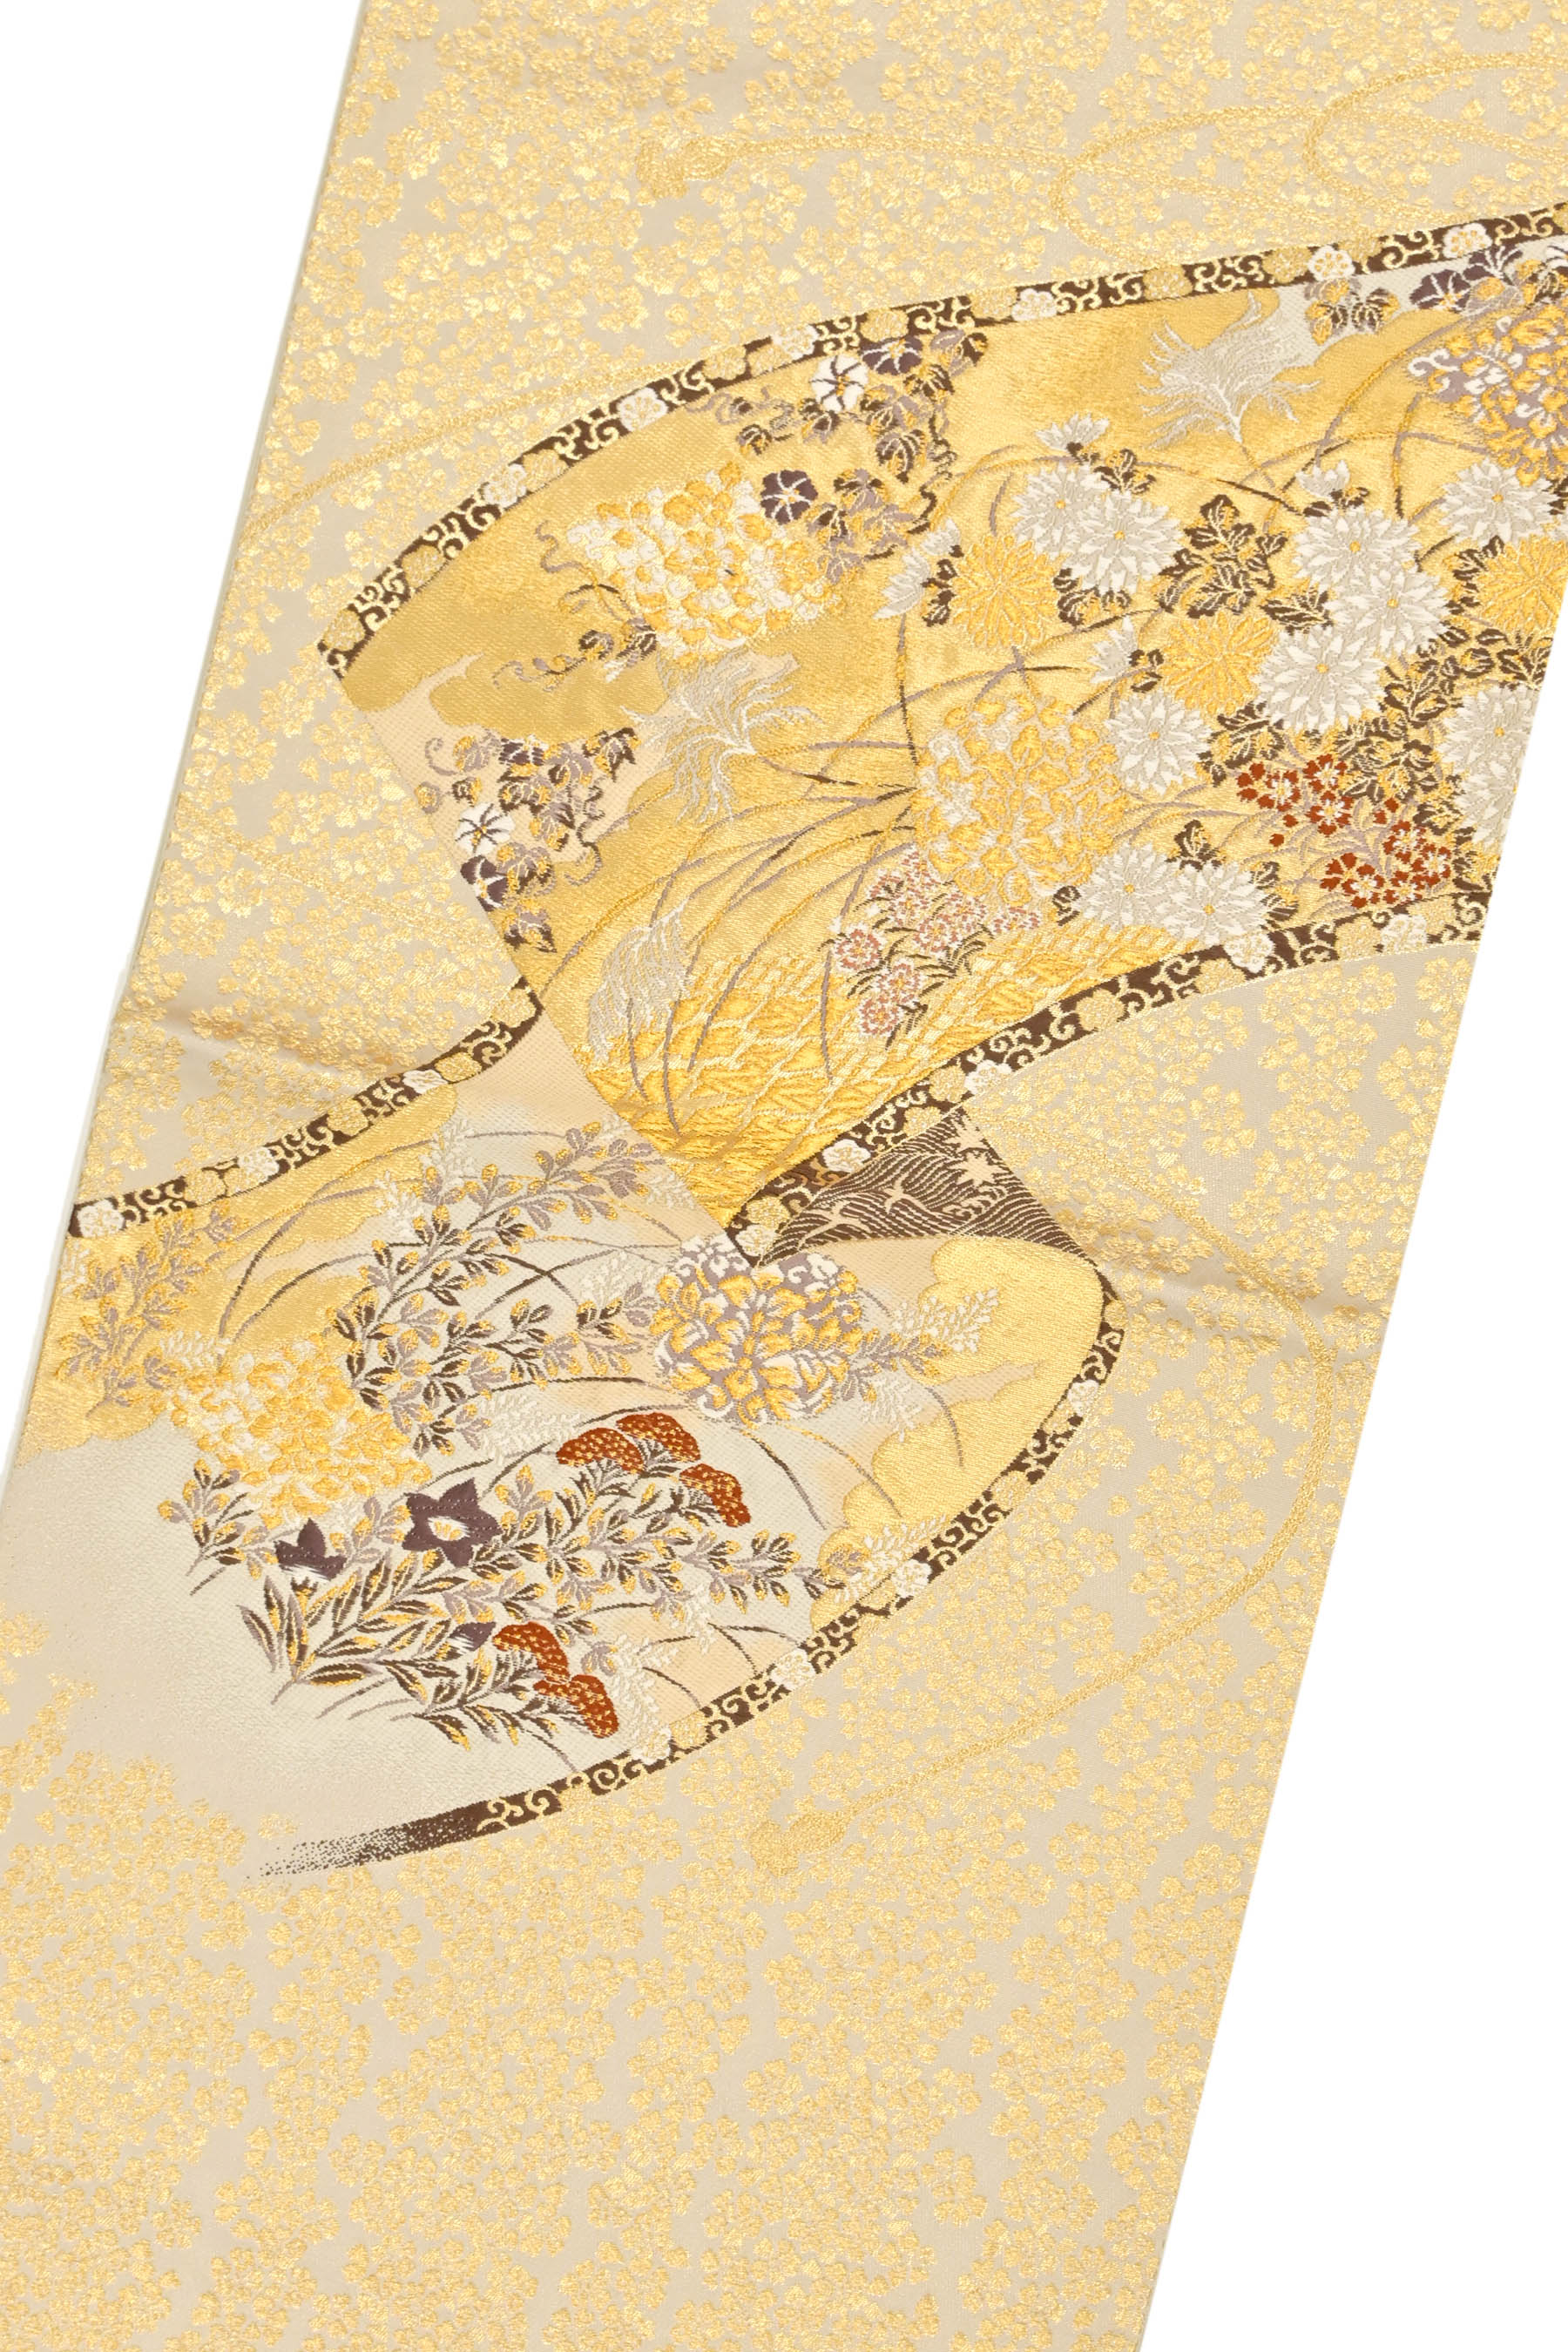 夜空 西陣織の名門【加納幸】 上質なエレガントスタイルに 極上のお締め心地 美品の袋帯